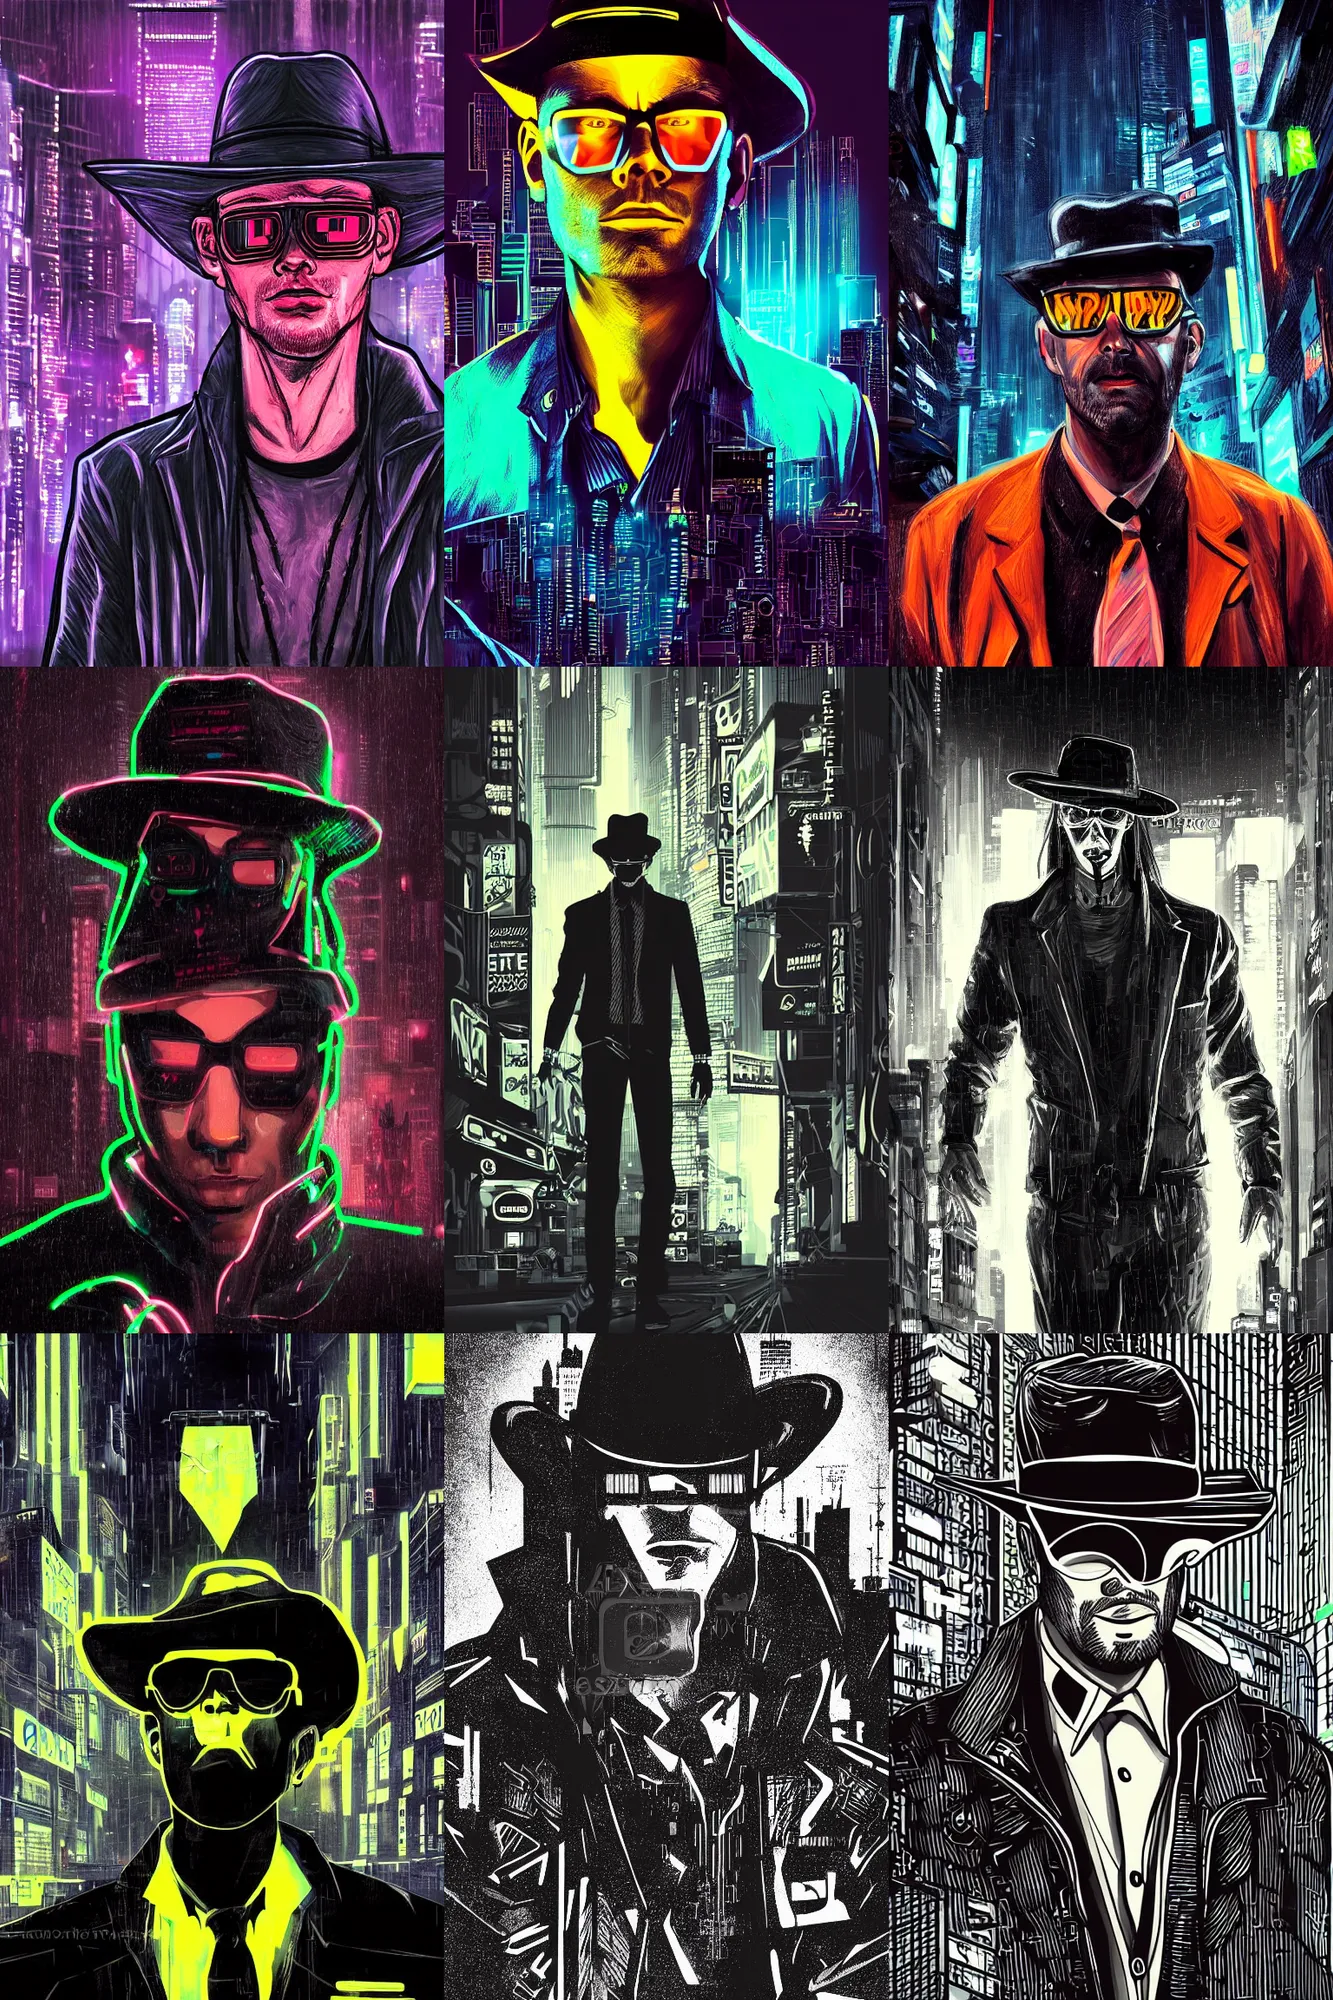 Prompt: portrait of detecive in the neon noir cyberpunk city man in black hat, epic portrait illustration